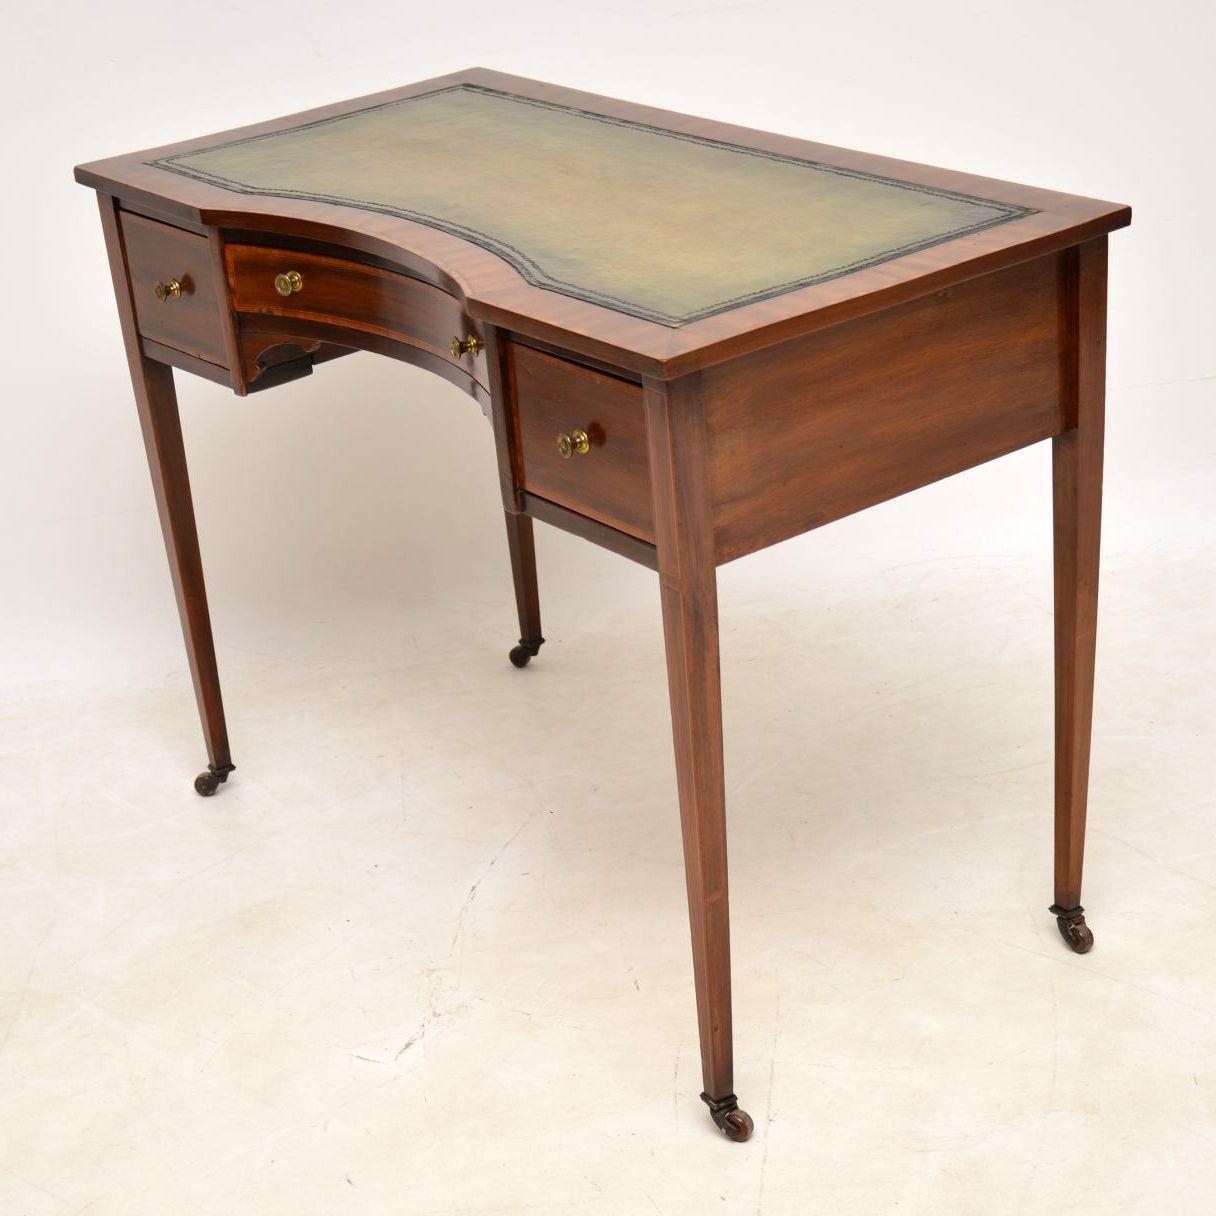 Antique Edwardian Inlaid Mahogany Writing Table / Desk 1